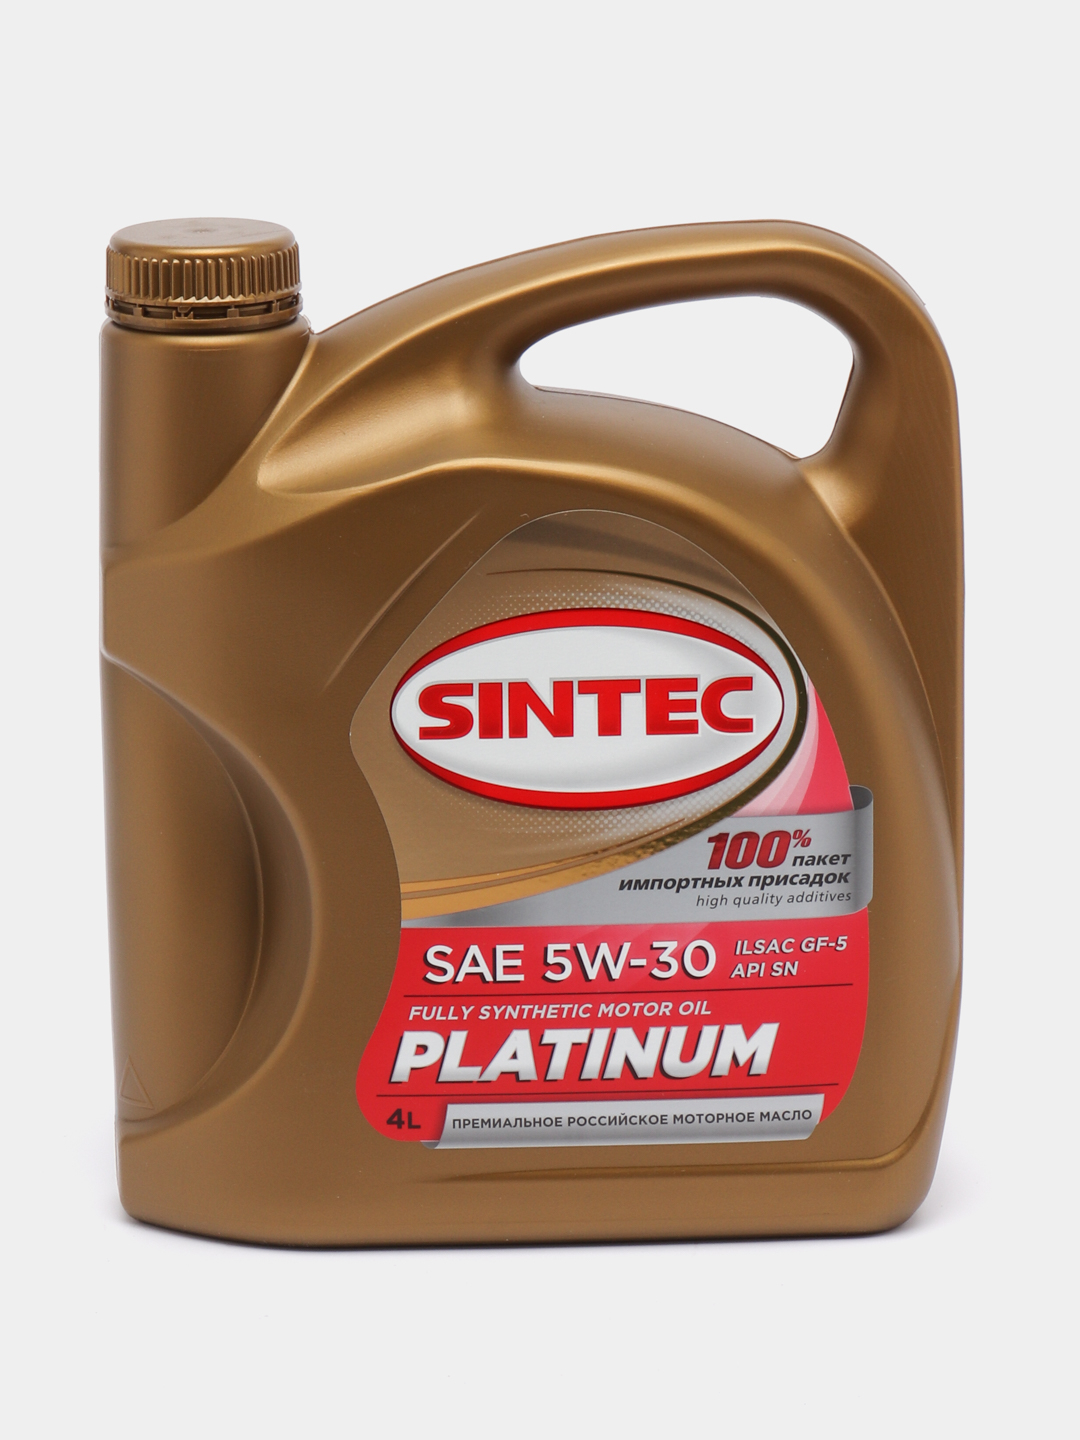  масло SINTEC PLATINUM 5W-30 Синтетическое за 2051 ₽  в .